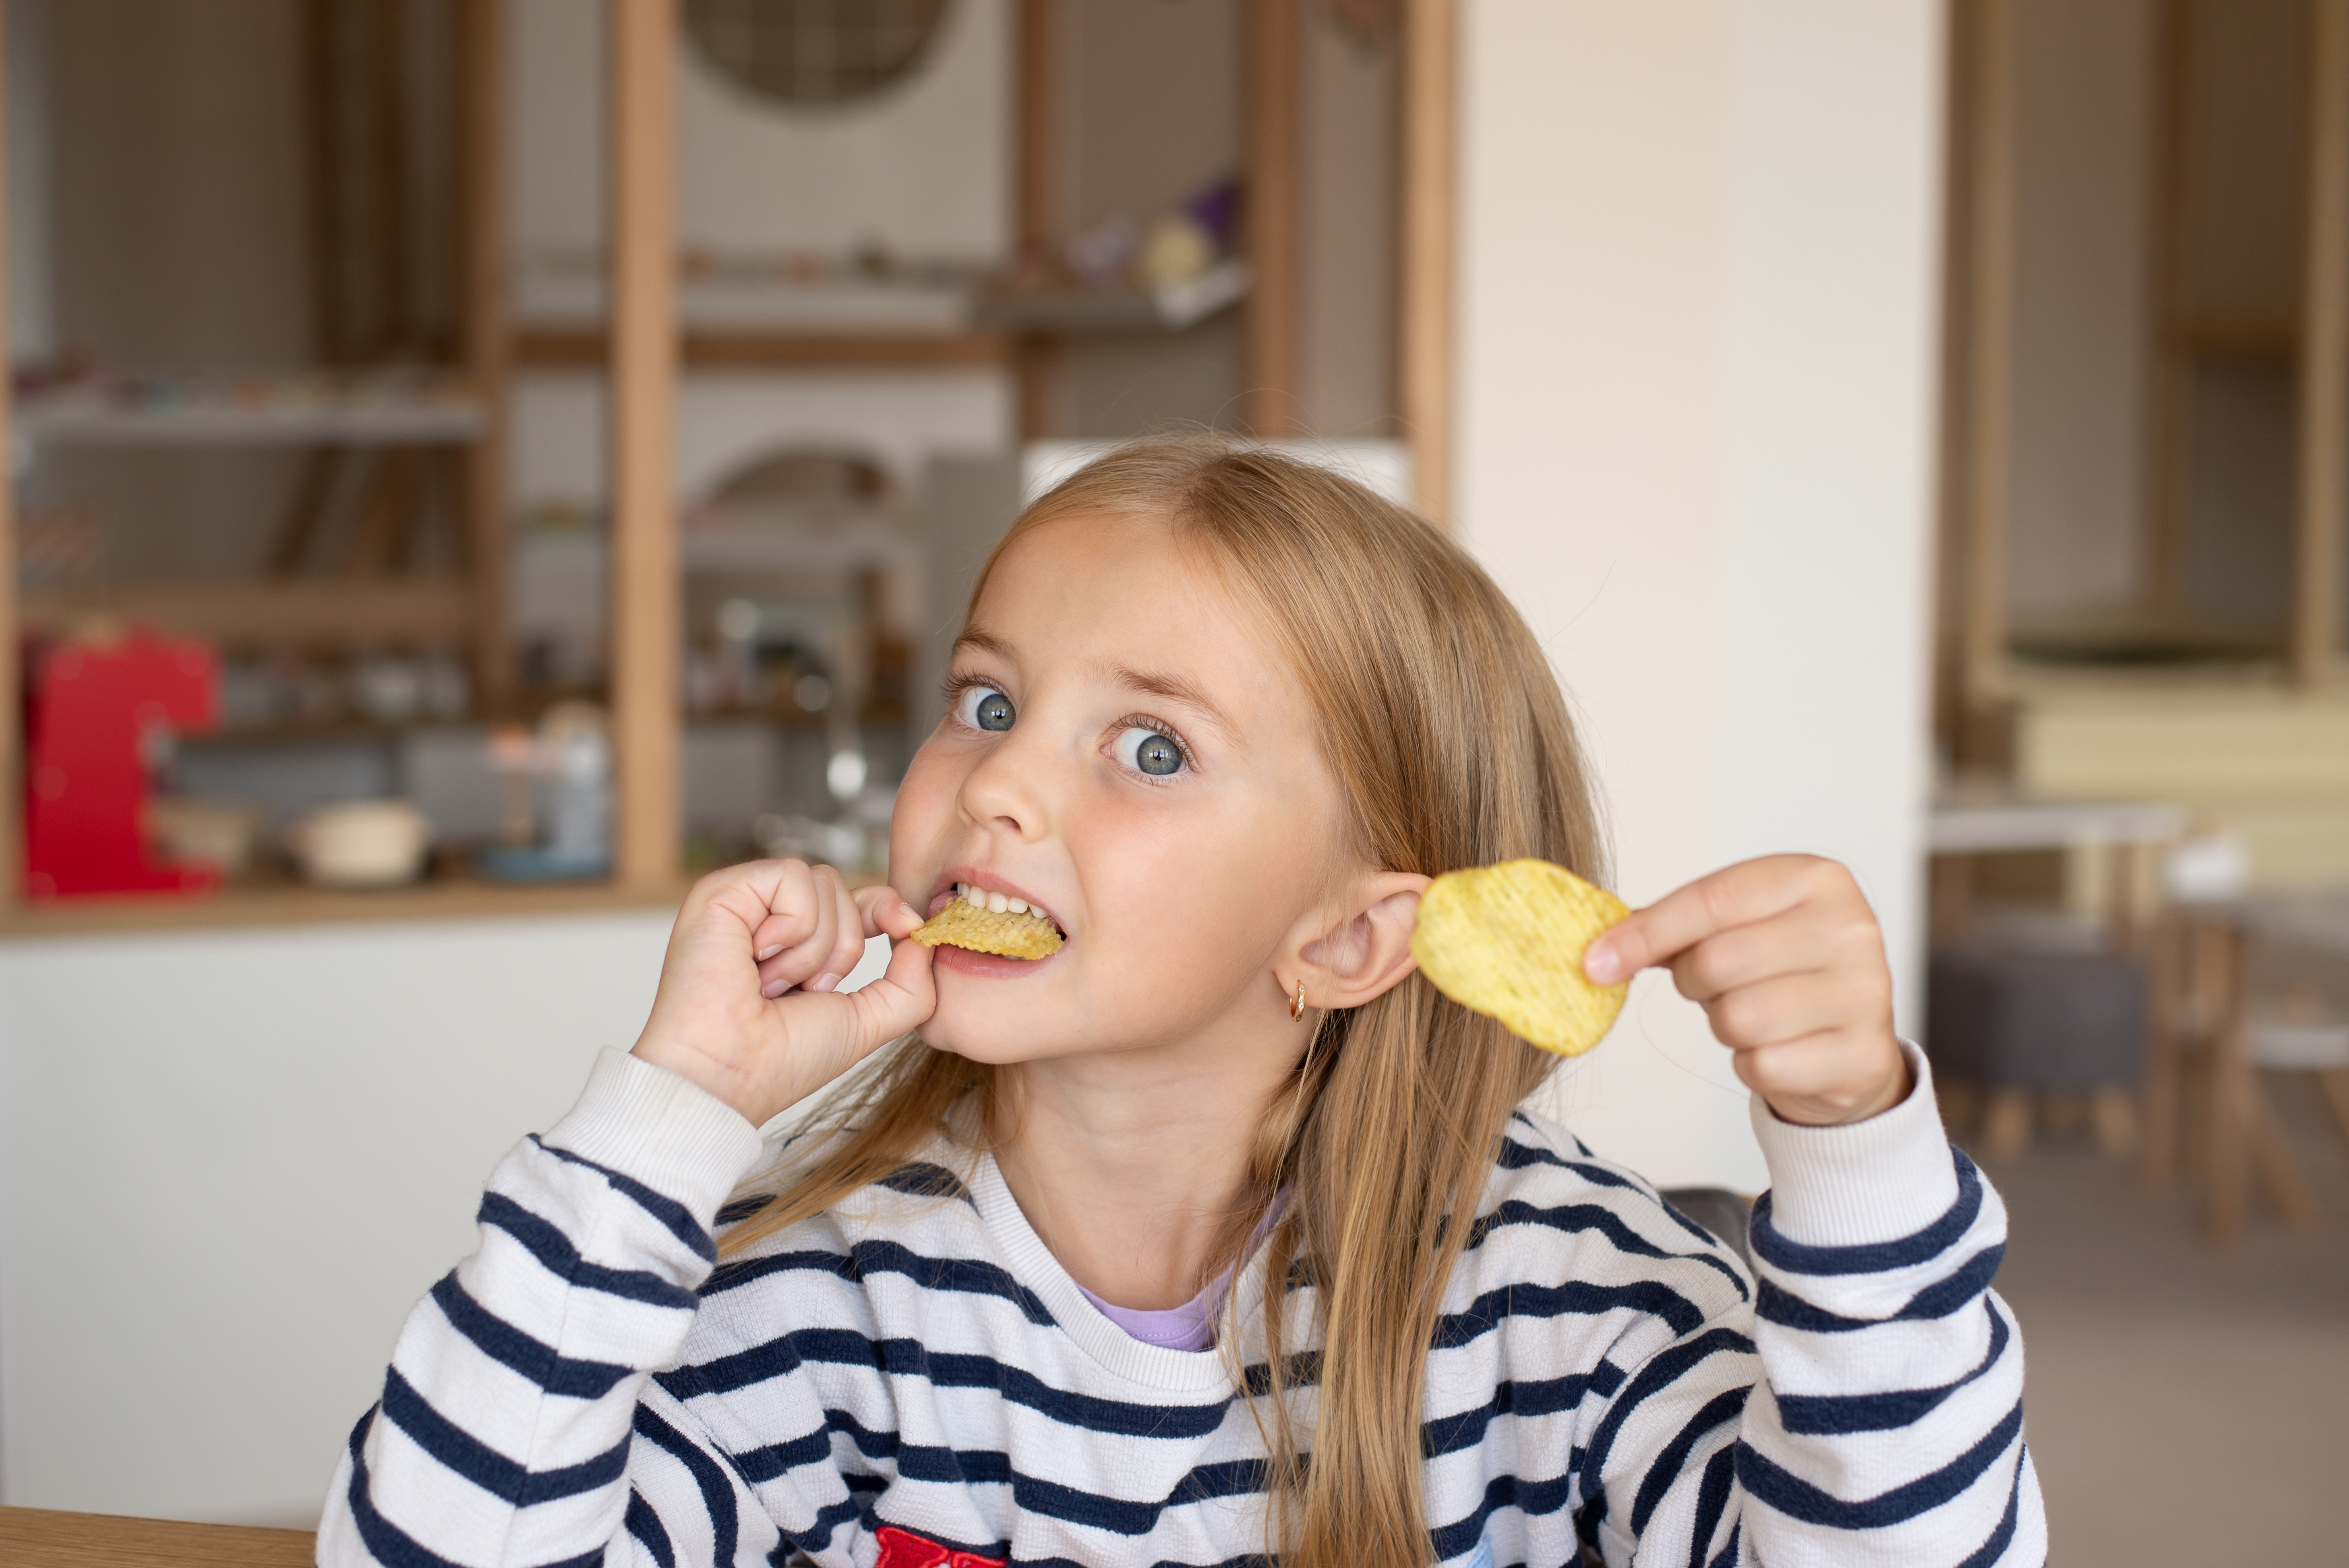 Une petite fille mangeant son goûter | Source : Shutterstock